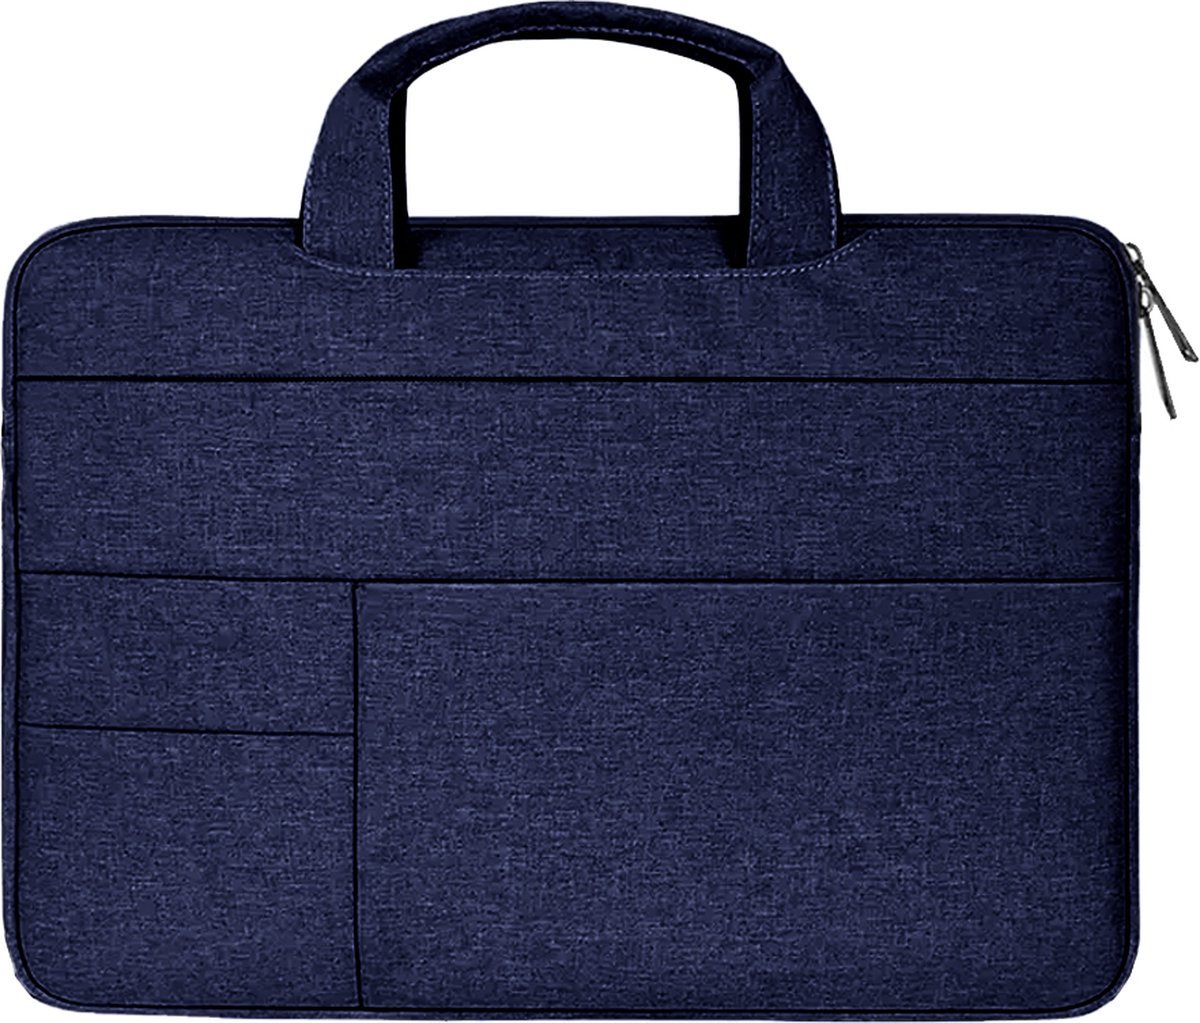 Case2go - Laptophoes geschikt voor Acer Extensa - Laptoptas 15.6 inch - Spatwaterdicht - Met Handvat - Donker Blauw